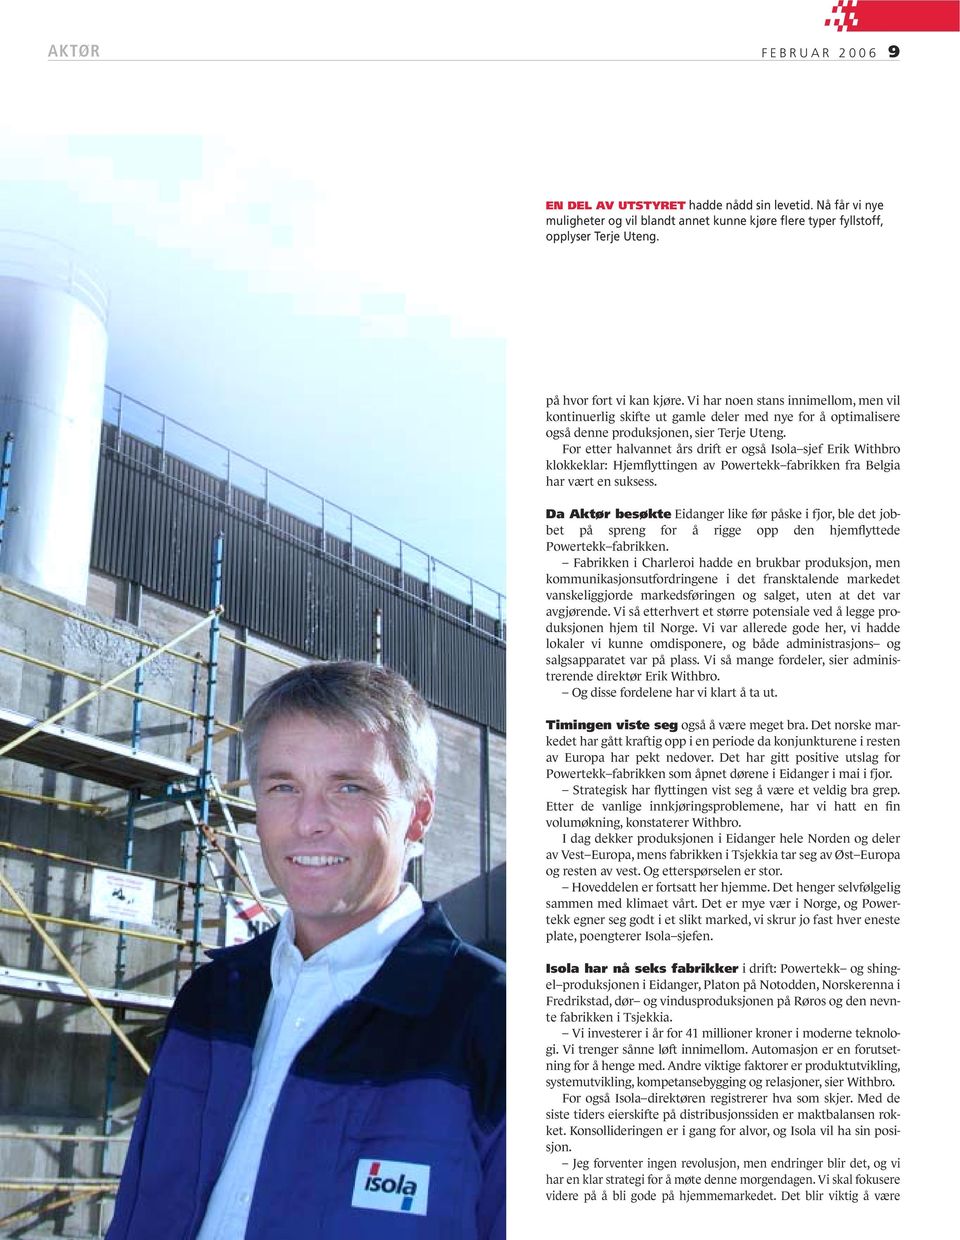 For etter halvannet års drift er også Isola sjef Erik Withbro klokkeklar: Hjemflyttingen av Powertekk fabrikken fra Belgia har vært en suksess.